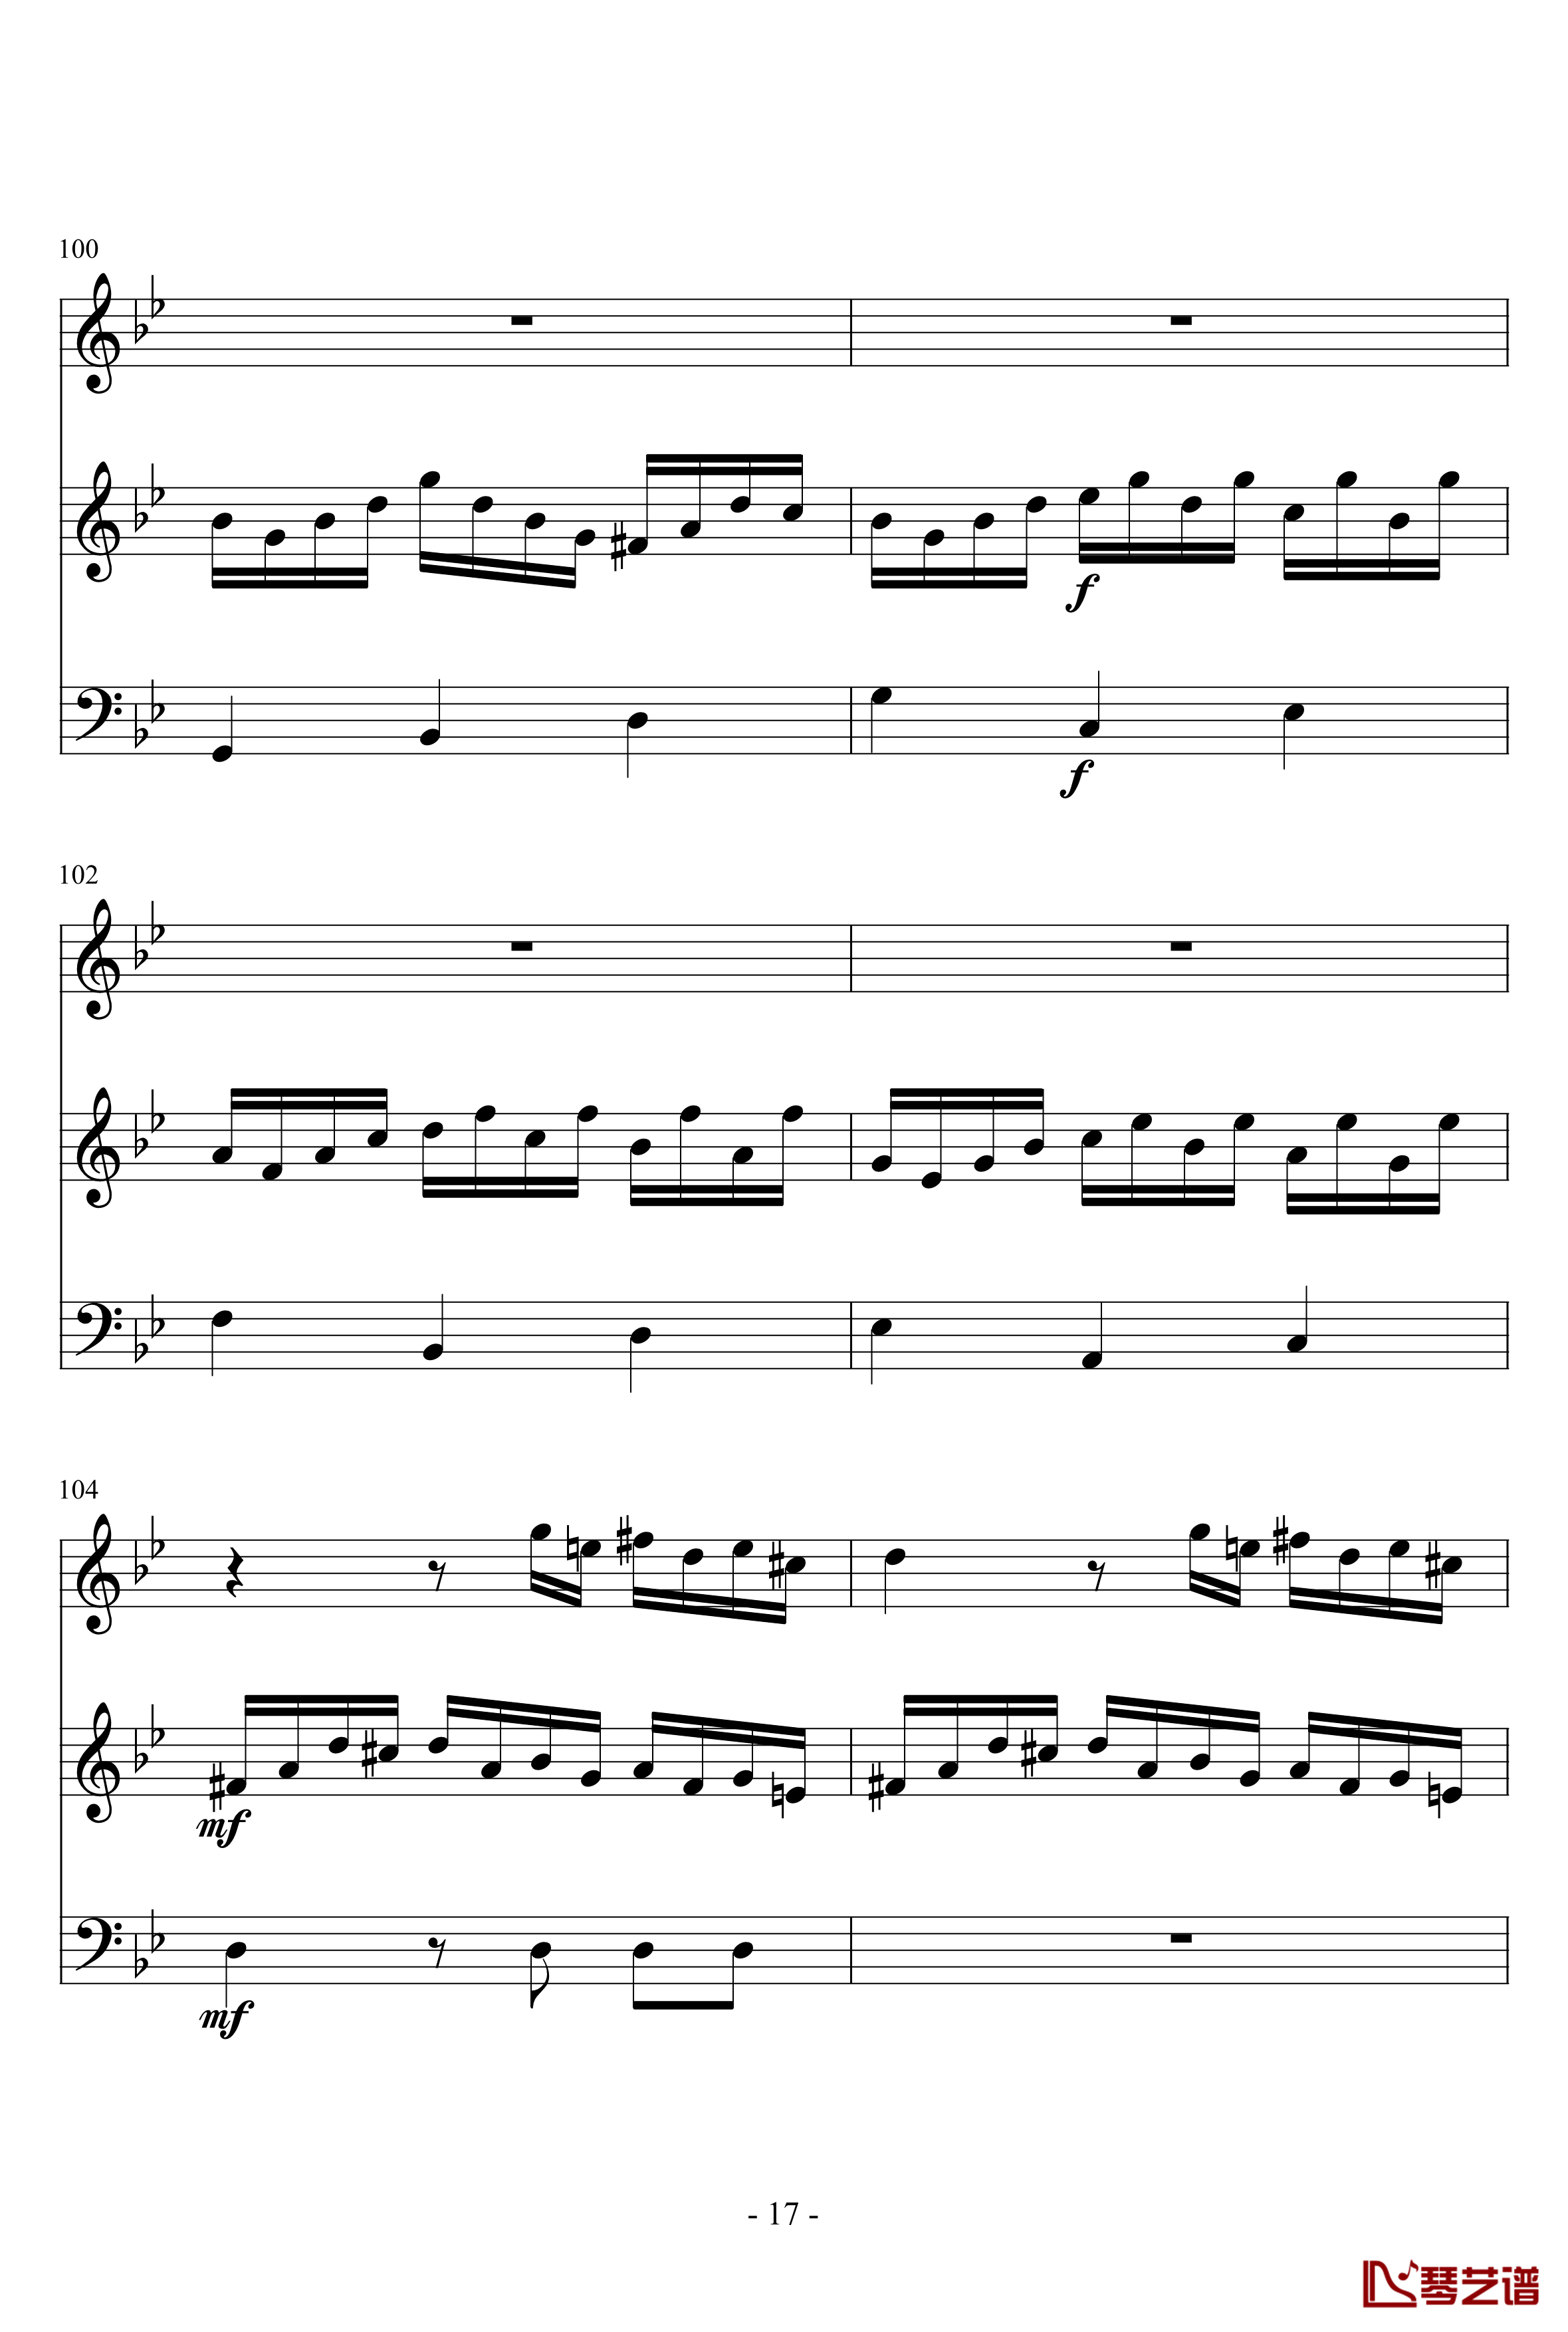 长笛与羽管键琴奏鸣曲第一乐章钢琴谱-巴赫-P.E.Bach17